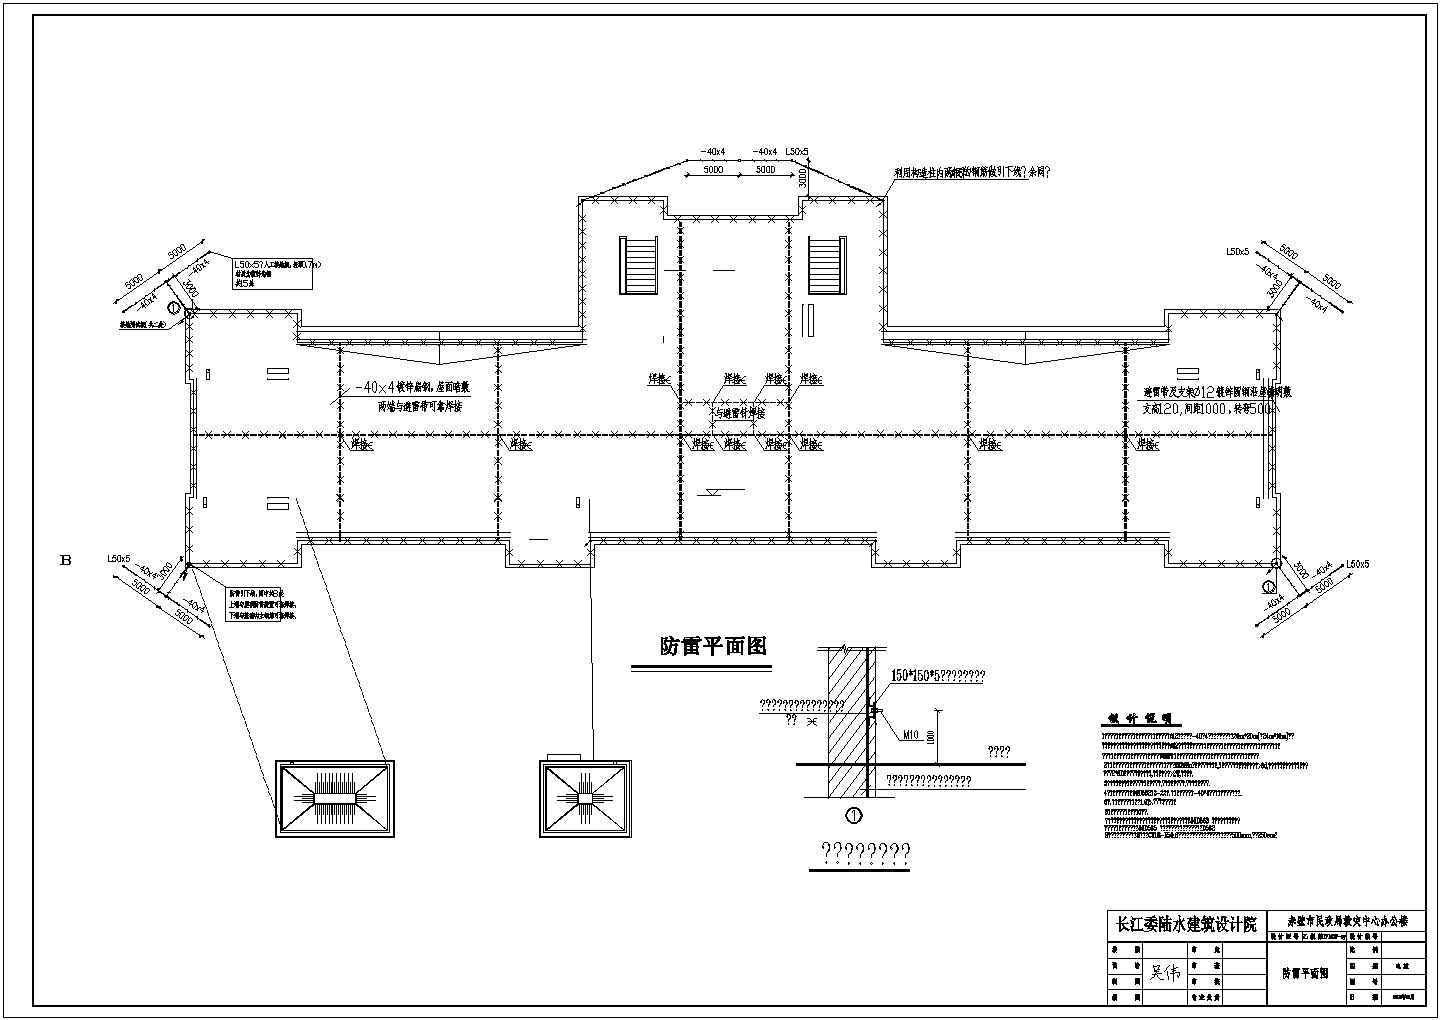 公共建筑电气方案设计及施工全套CAD图纸